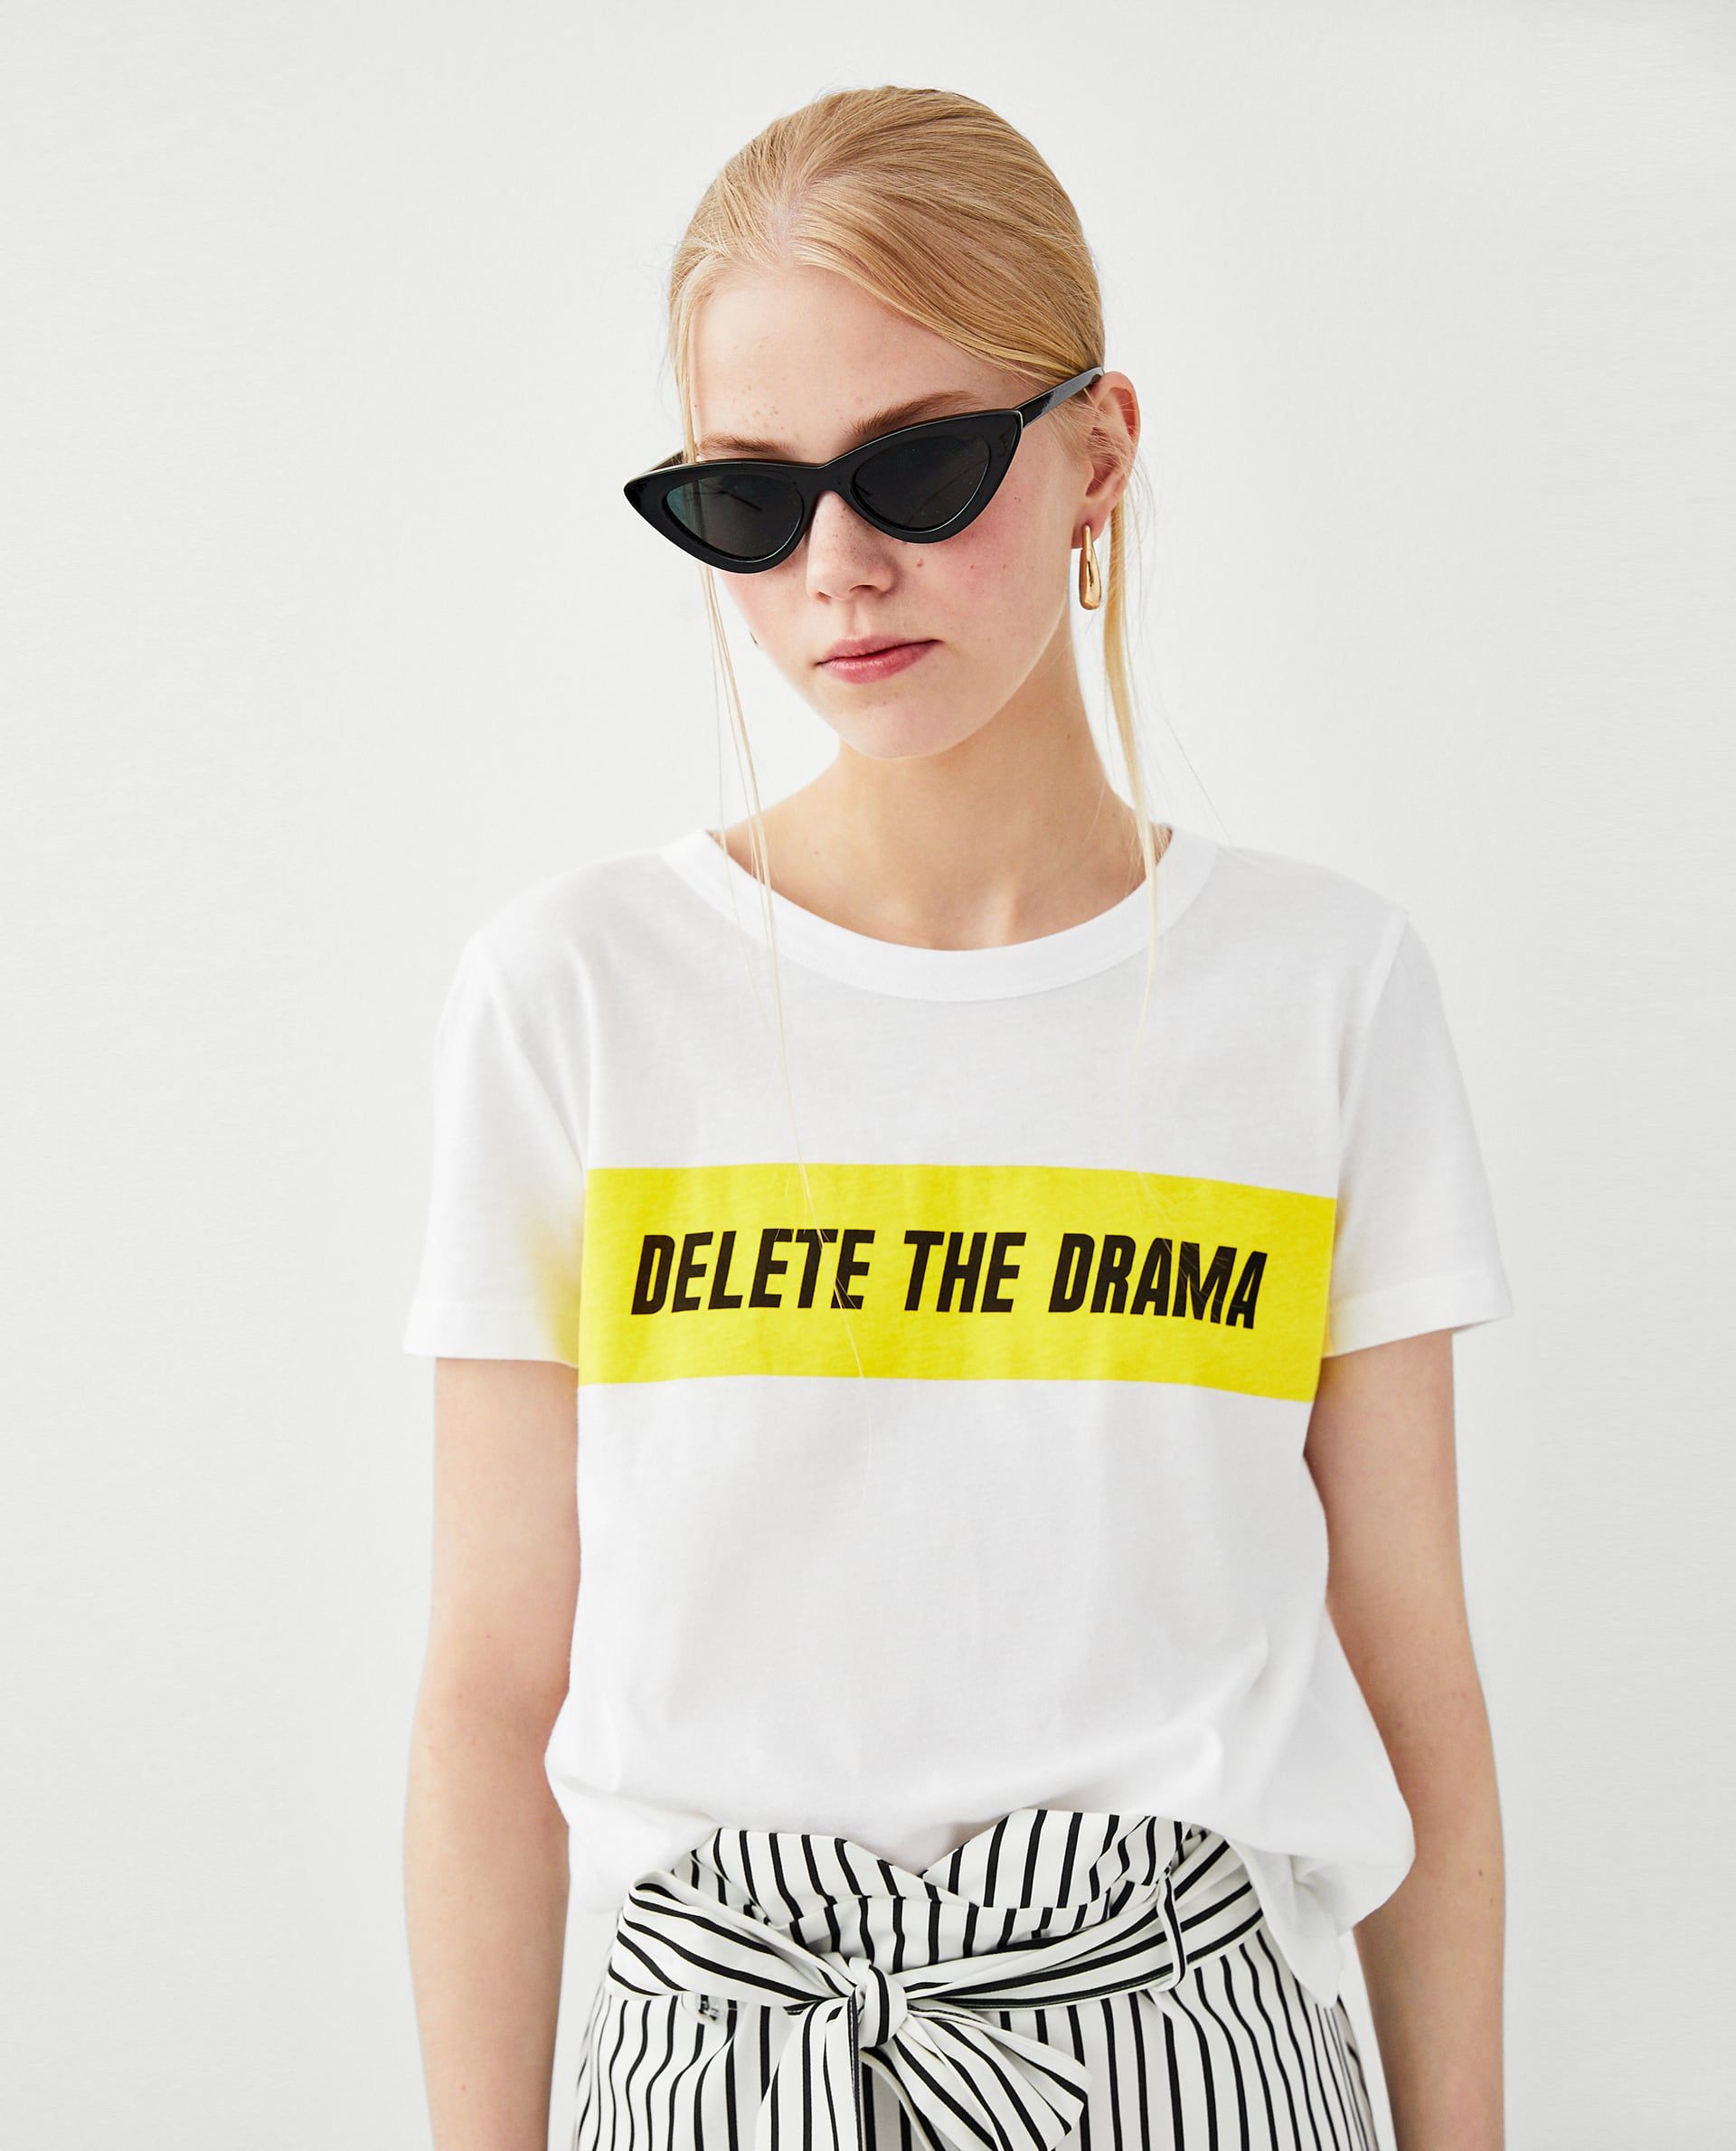 Cariñoso Herencia sobresalir Zara arrasa en el mundo con ésta camiseta- El mensaje de Zara que arrasa en  el mundo